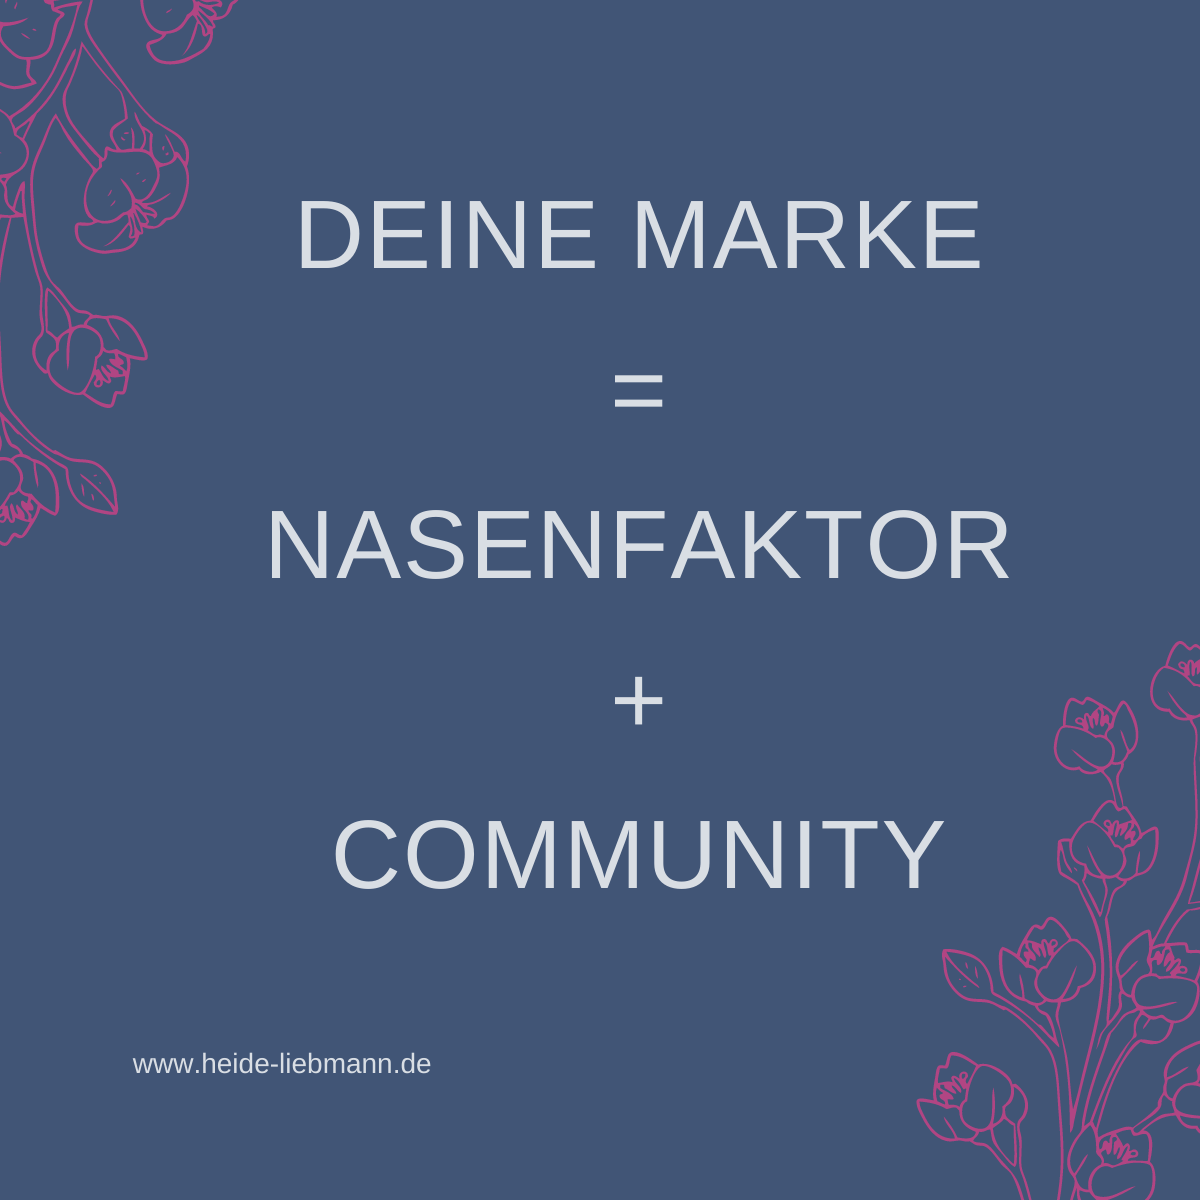 Deine Marke ≠ Nasenfaktor + Community